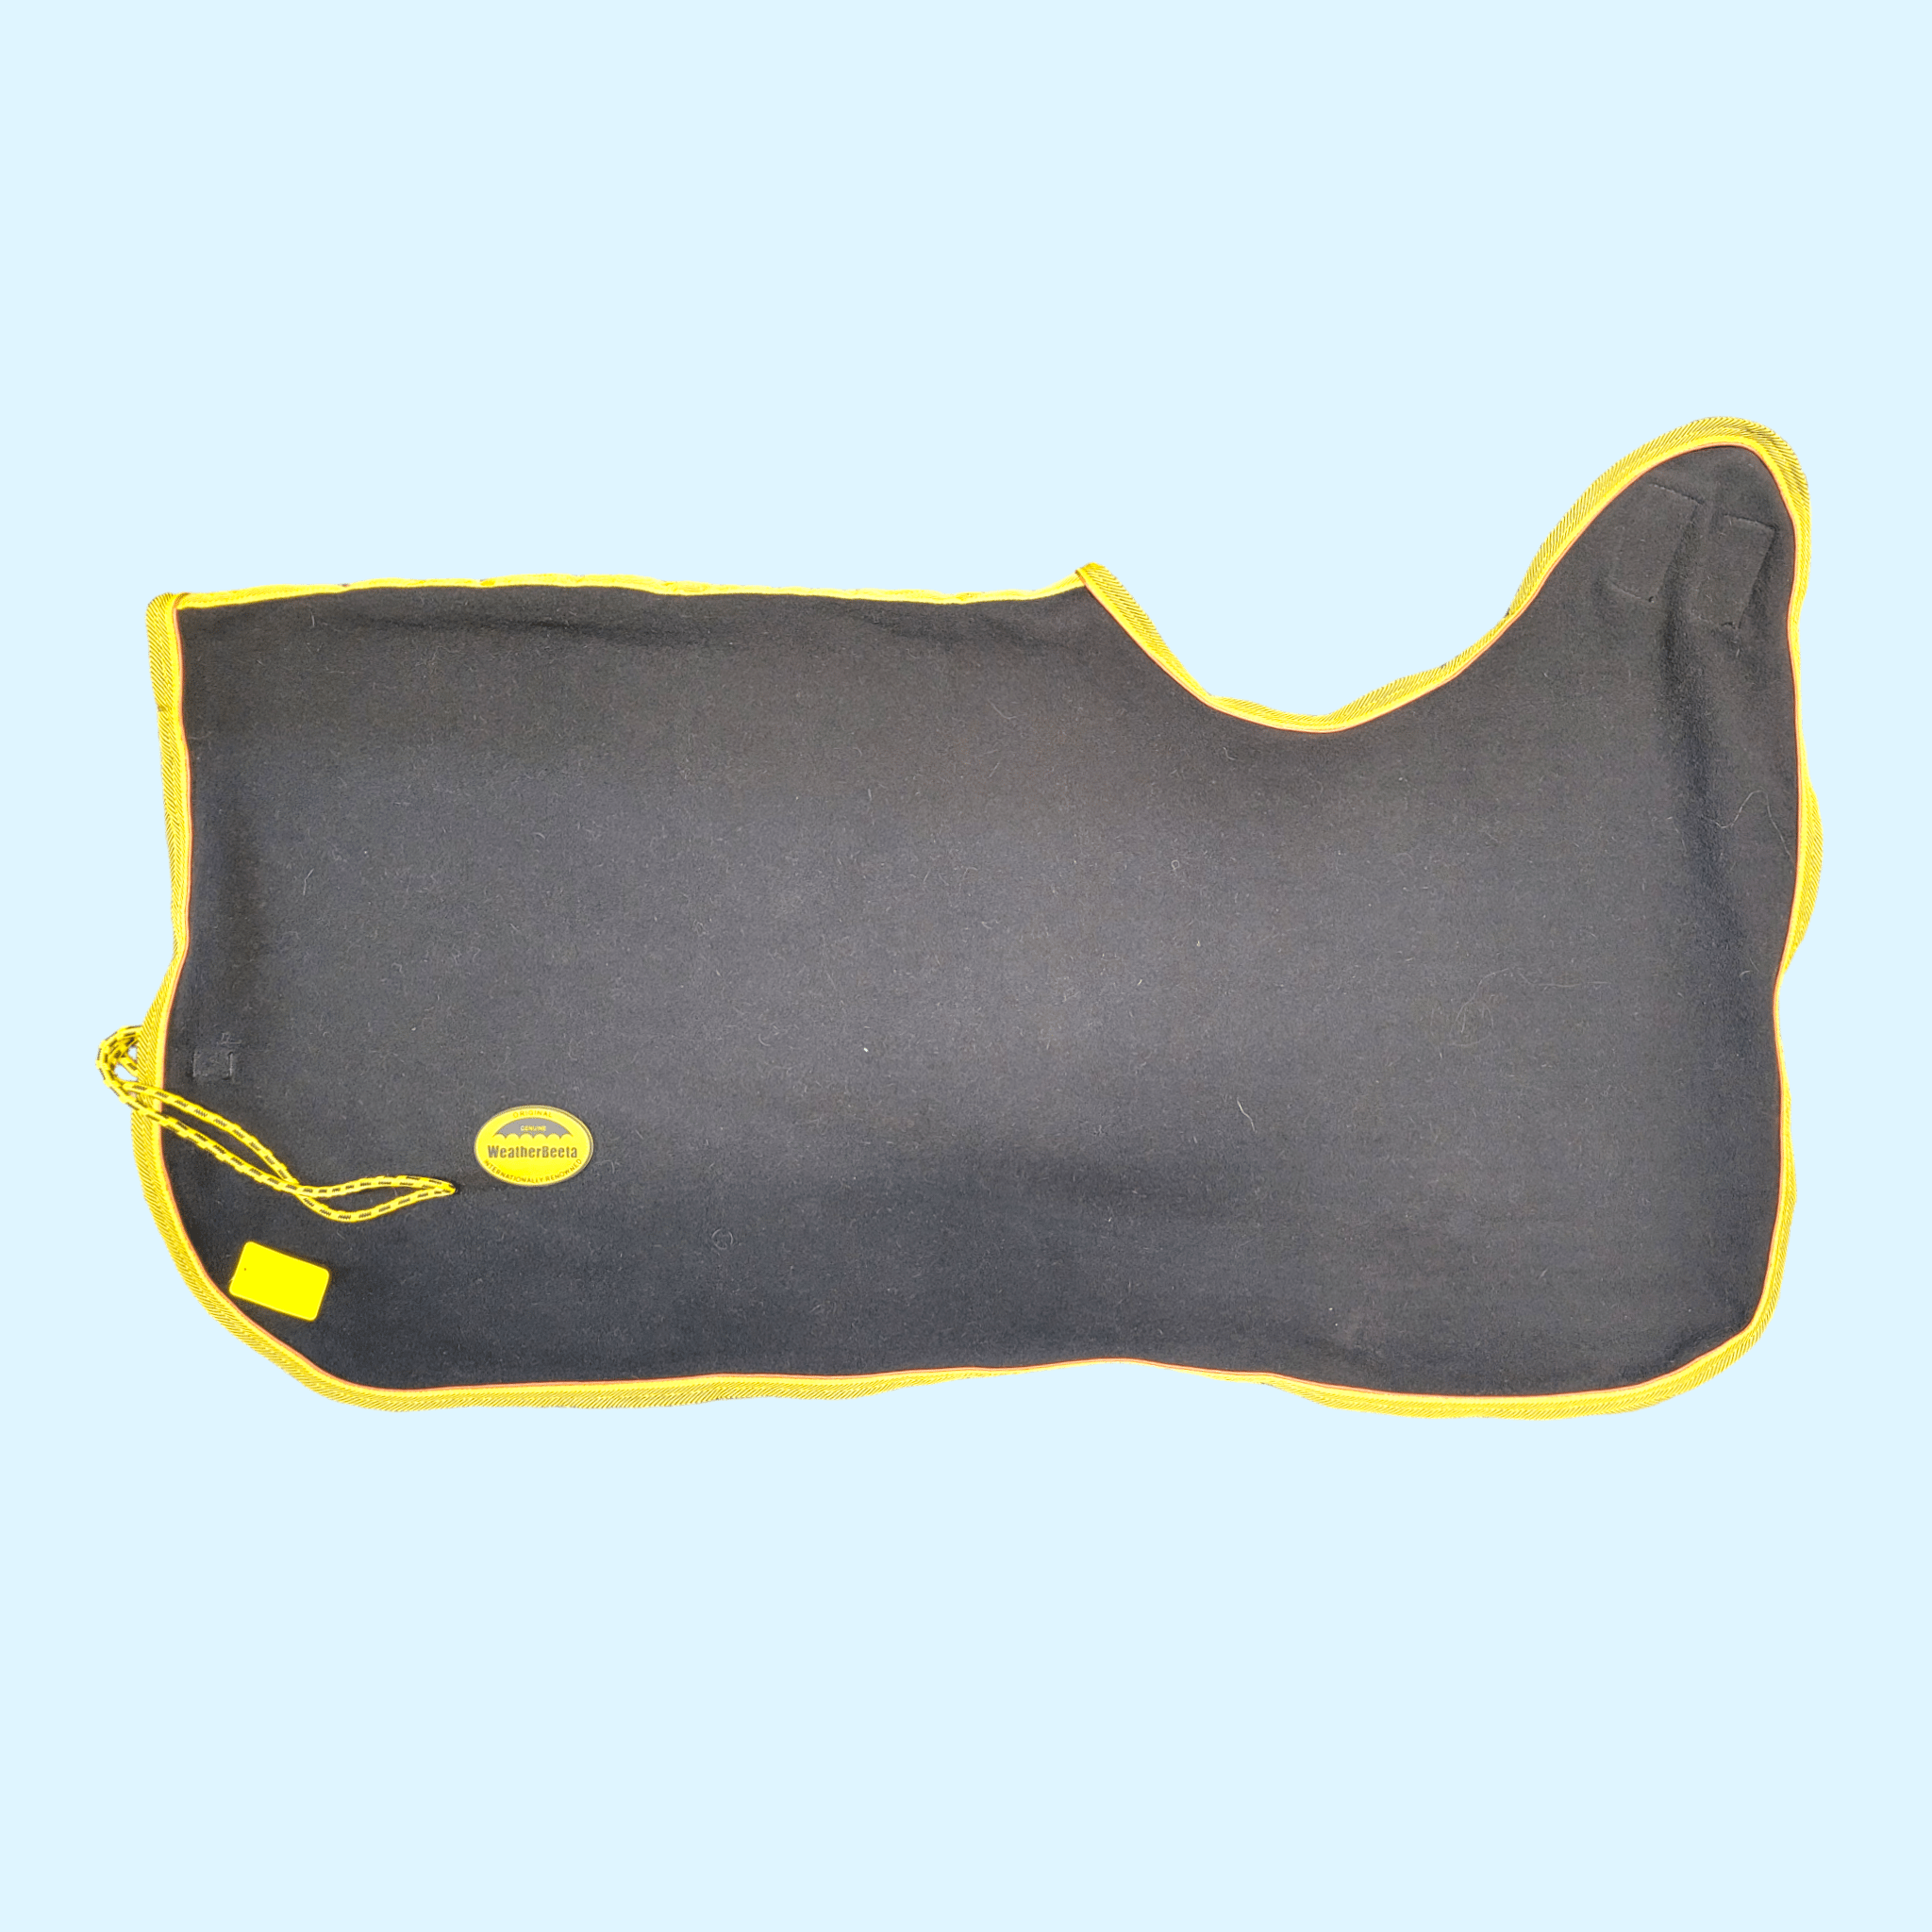 Weatherbeeta Fleece Quarter Sheet in Black/Yellow - 54" - Equine Exchange Tack Shop